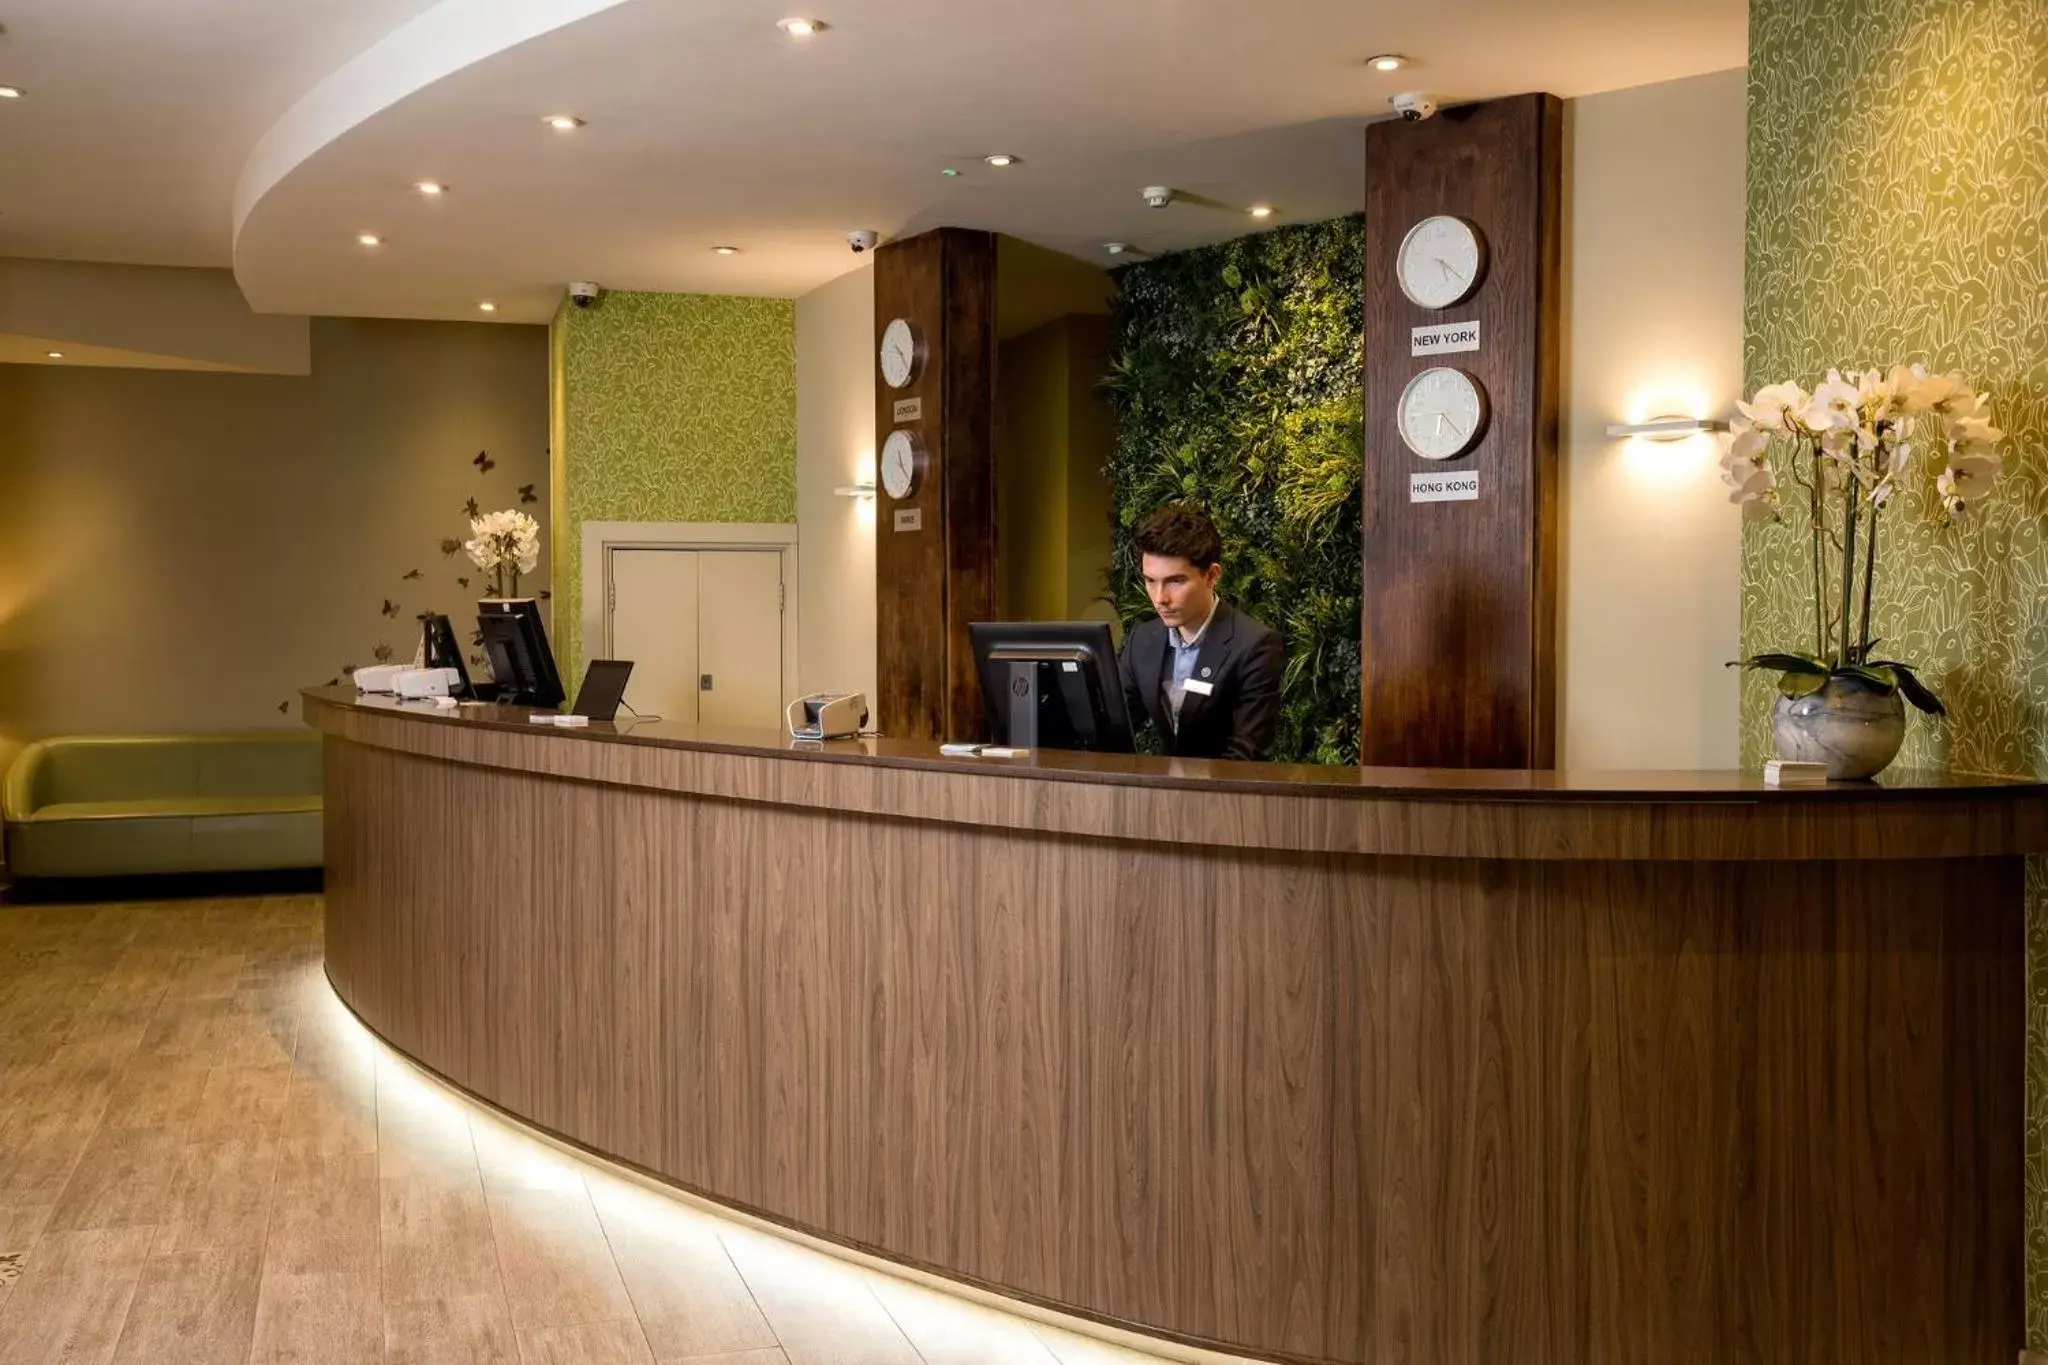 Lobby or reception, Lobby/Reception in Bedford Hotel